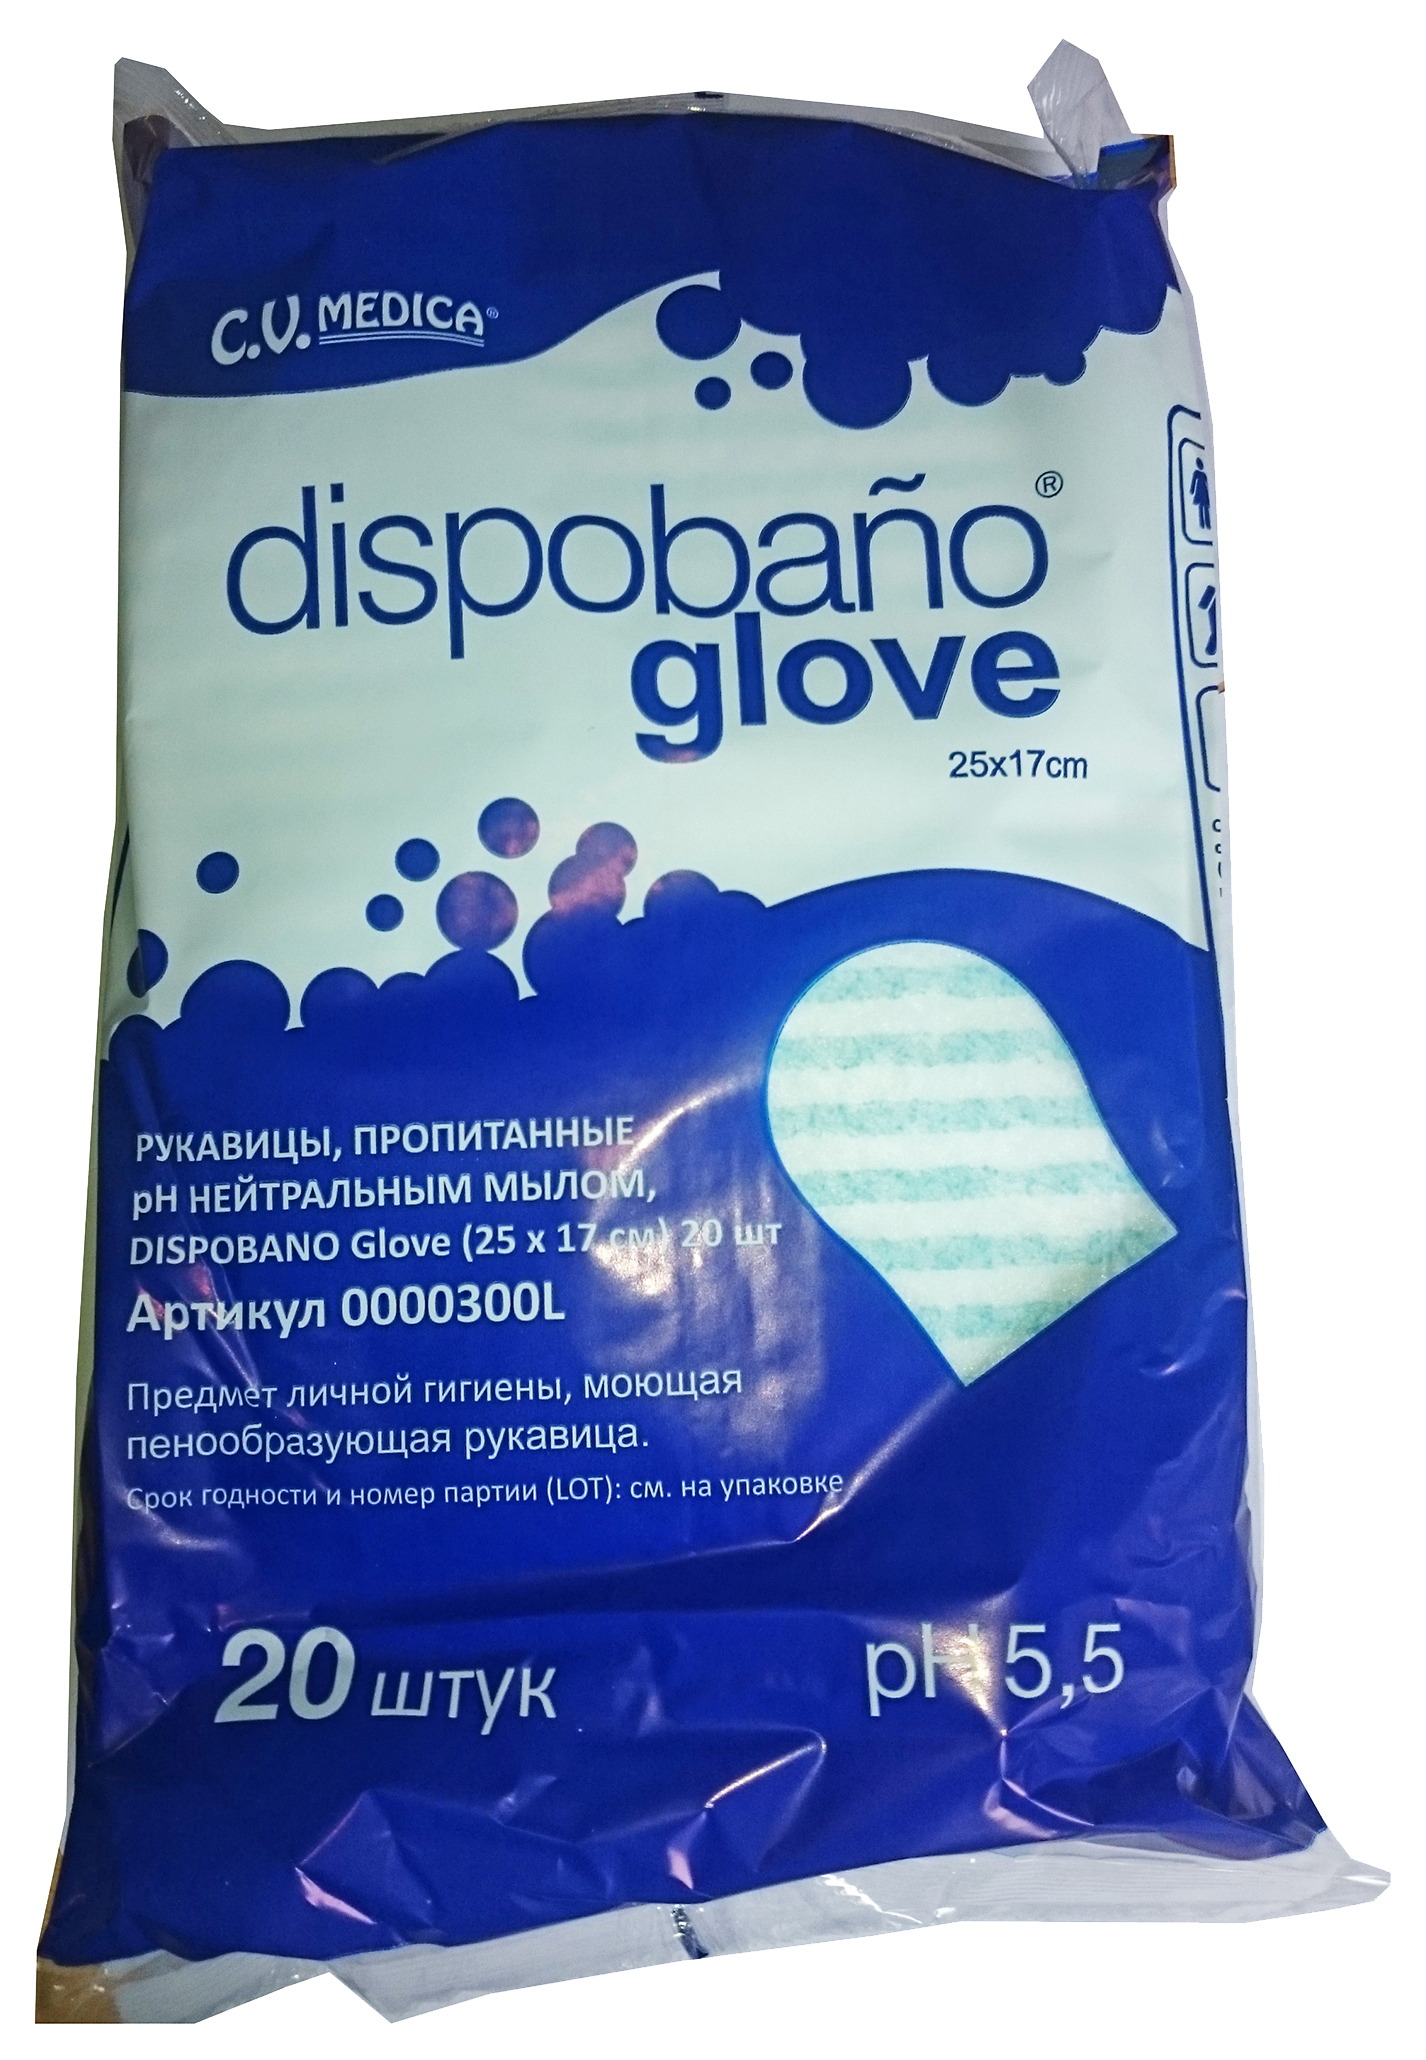 фото Пенообразующая рукавица cv medica с пэ-ламинацией dispobano glove 20 шт.